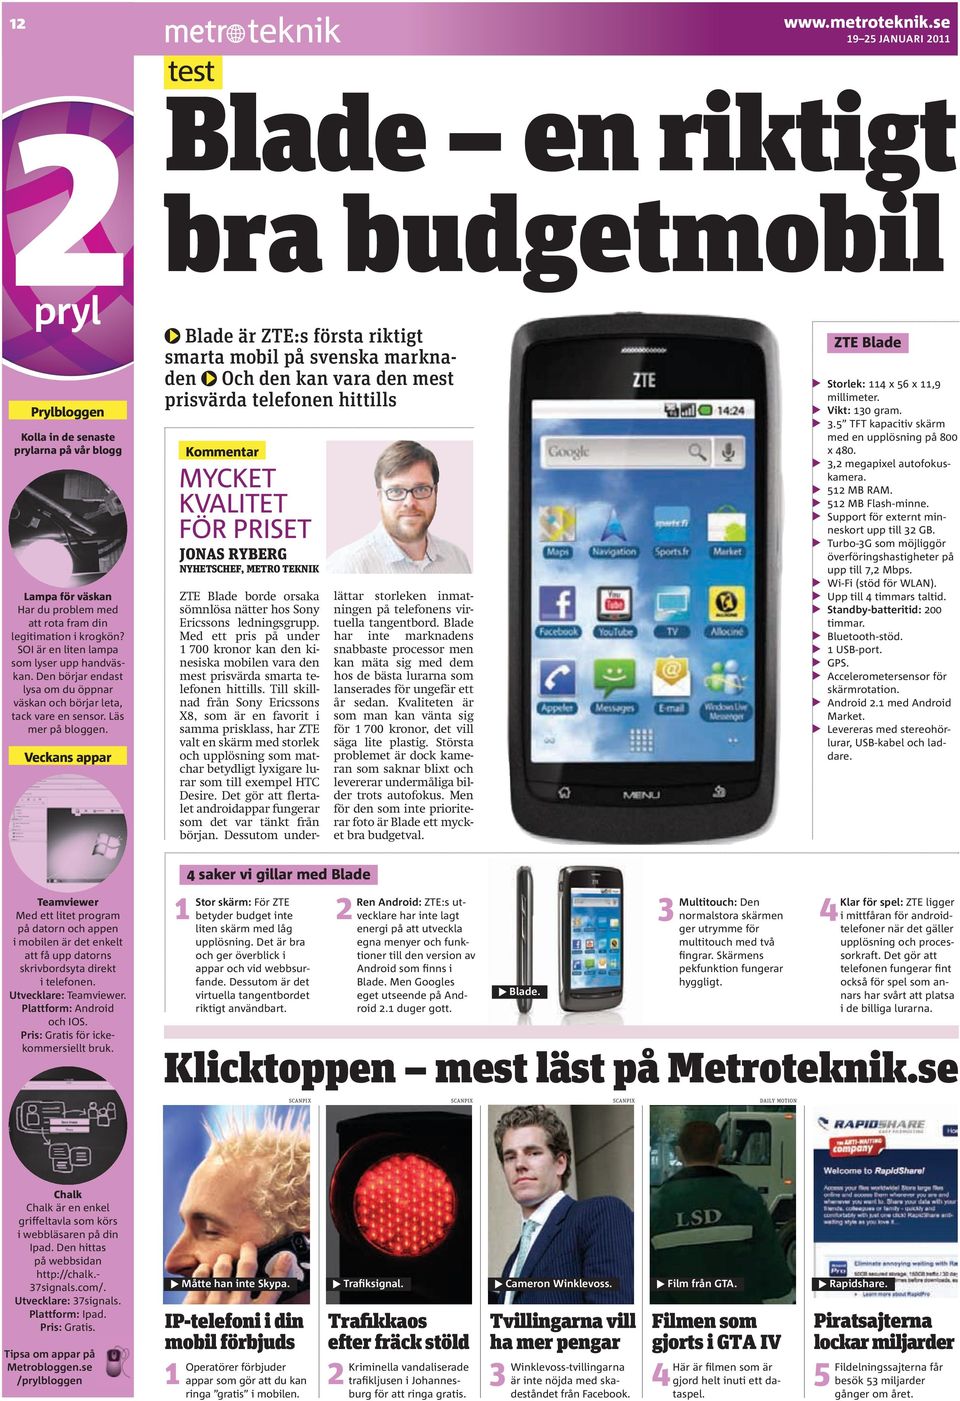 Veckans appar test Blade en riktigt bra budgetmobil Blade är ZTE:s första riktigt smarta mobil på svenska marknaden Och den kan vara den mest prisvärda telefonen hittills Kommentar MYCKET KVALITET